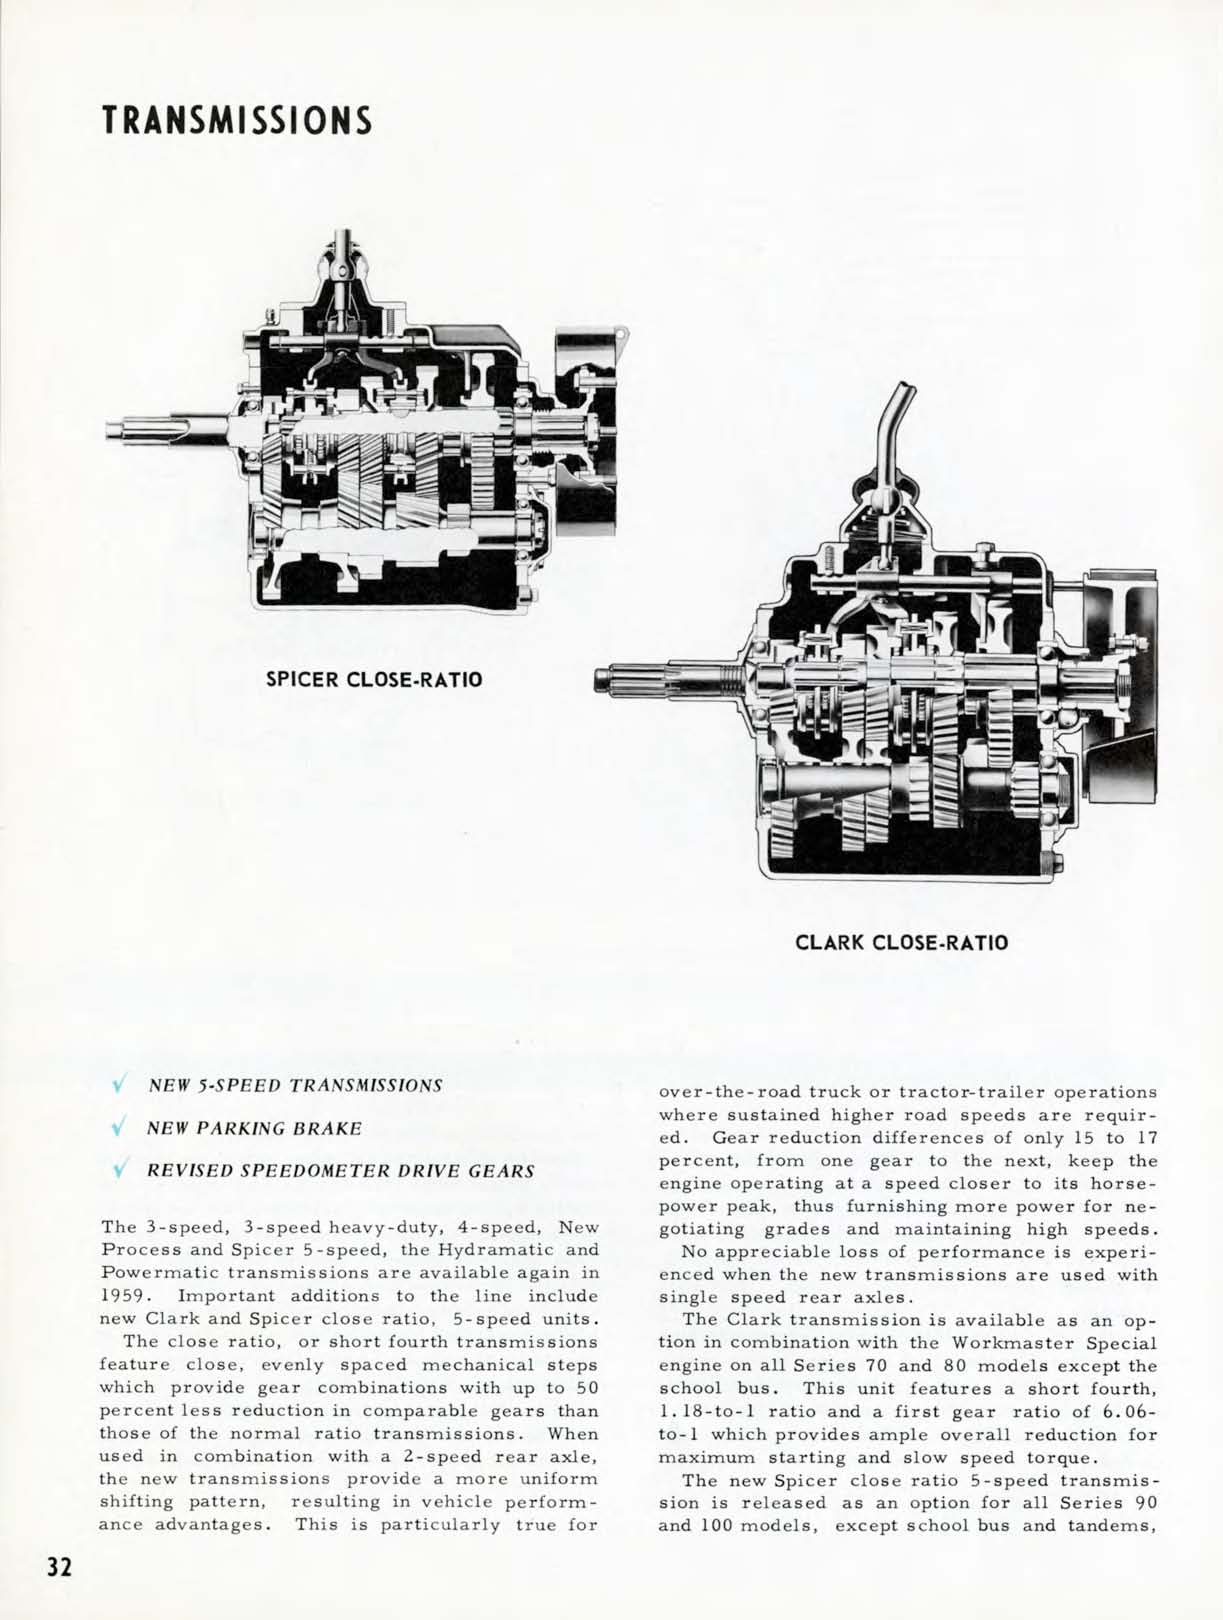 1959 Chevrolet Truck Engineering Features-32